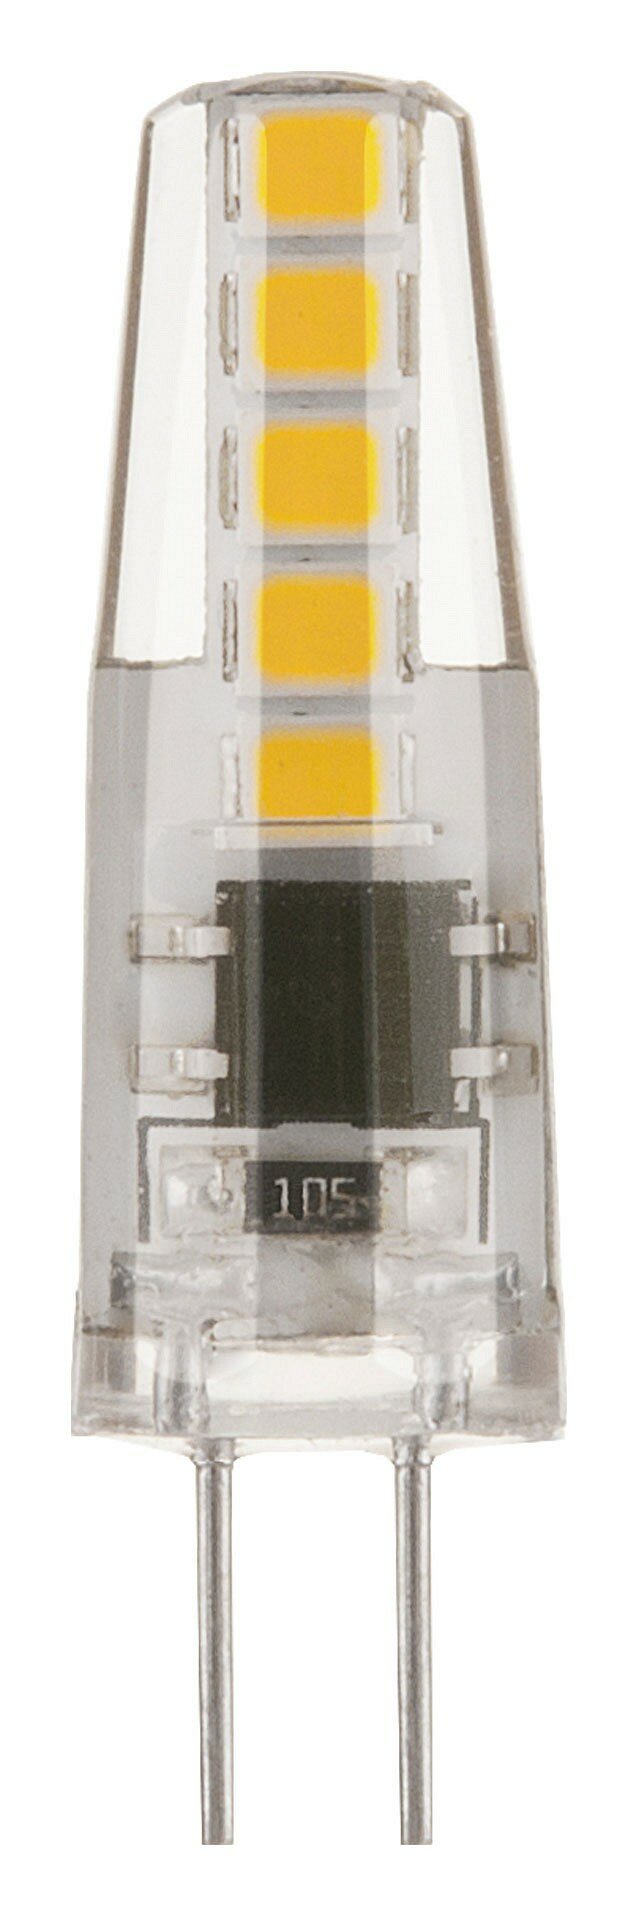 Лампа светодиодная Elektrostandard G4 220 В 3 Вт капсула прозрачная 270 лм теплый желтый свет - фото №6